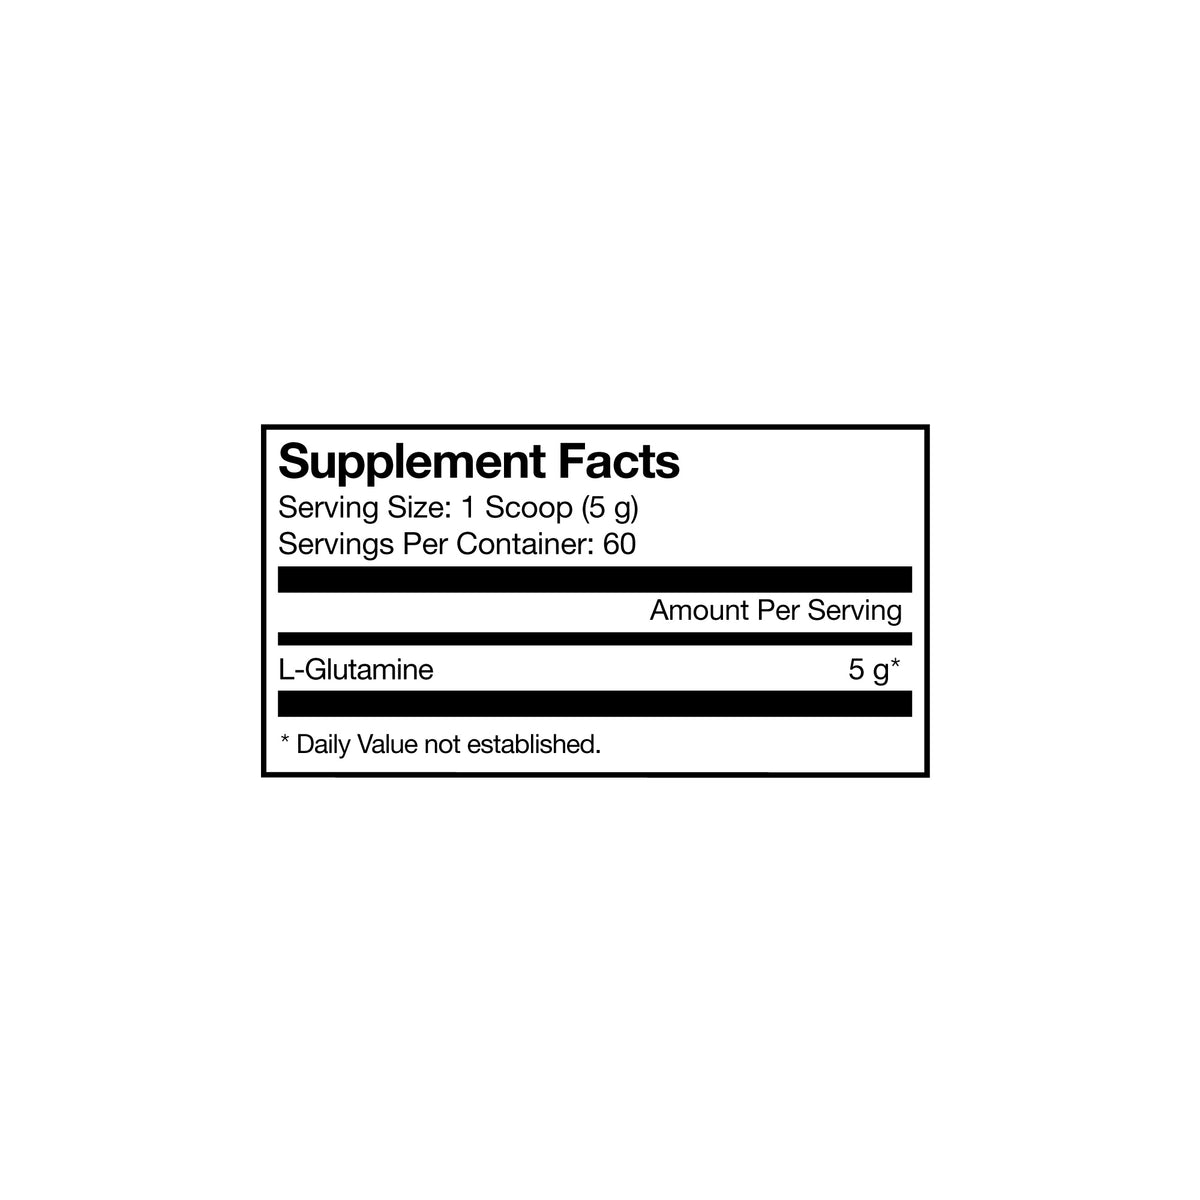 L-Glutamine Supplement Facts